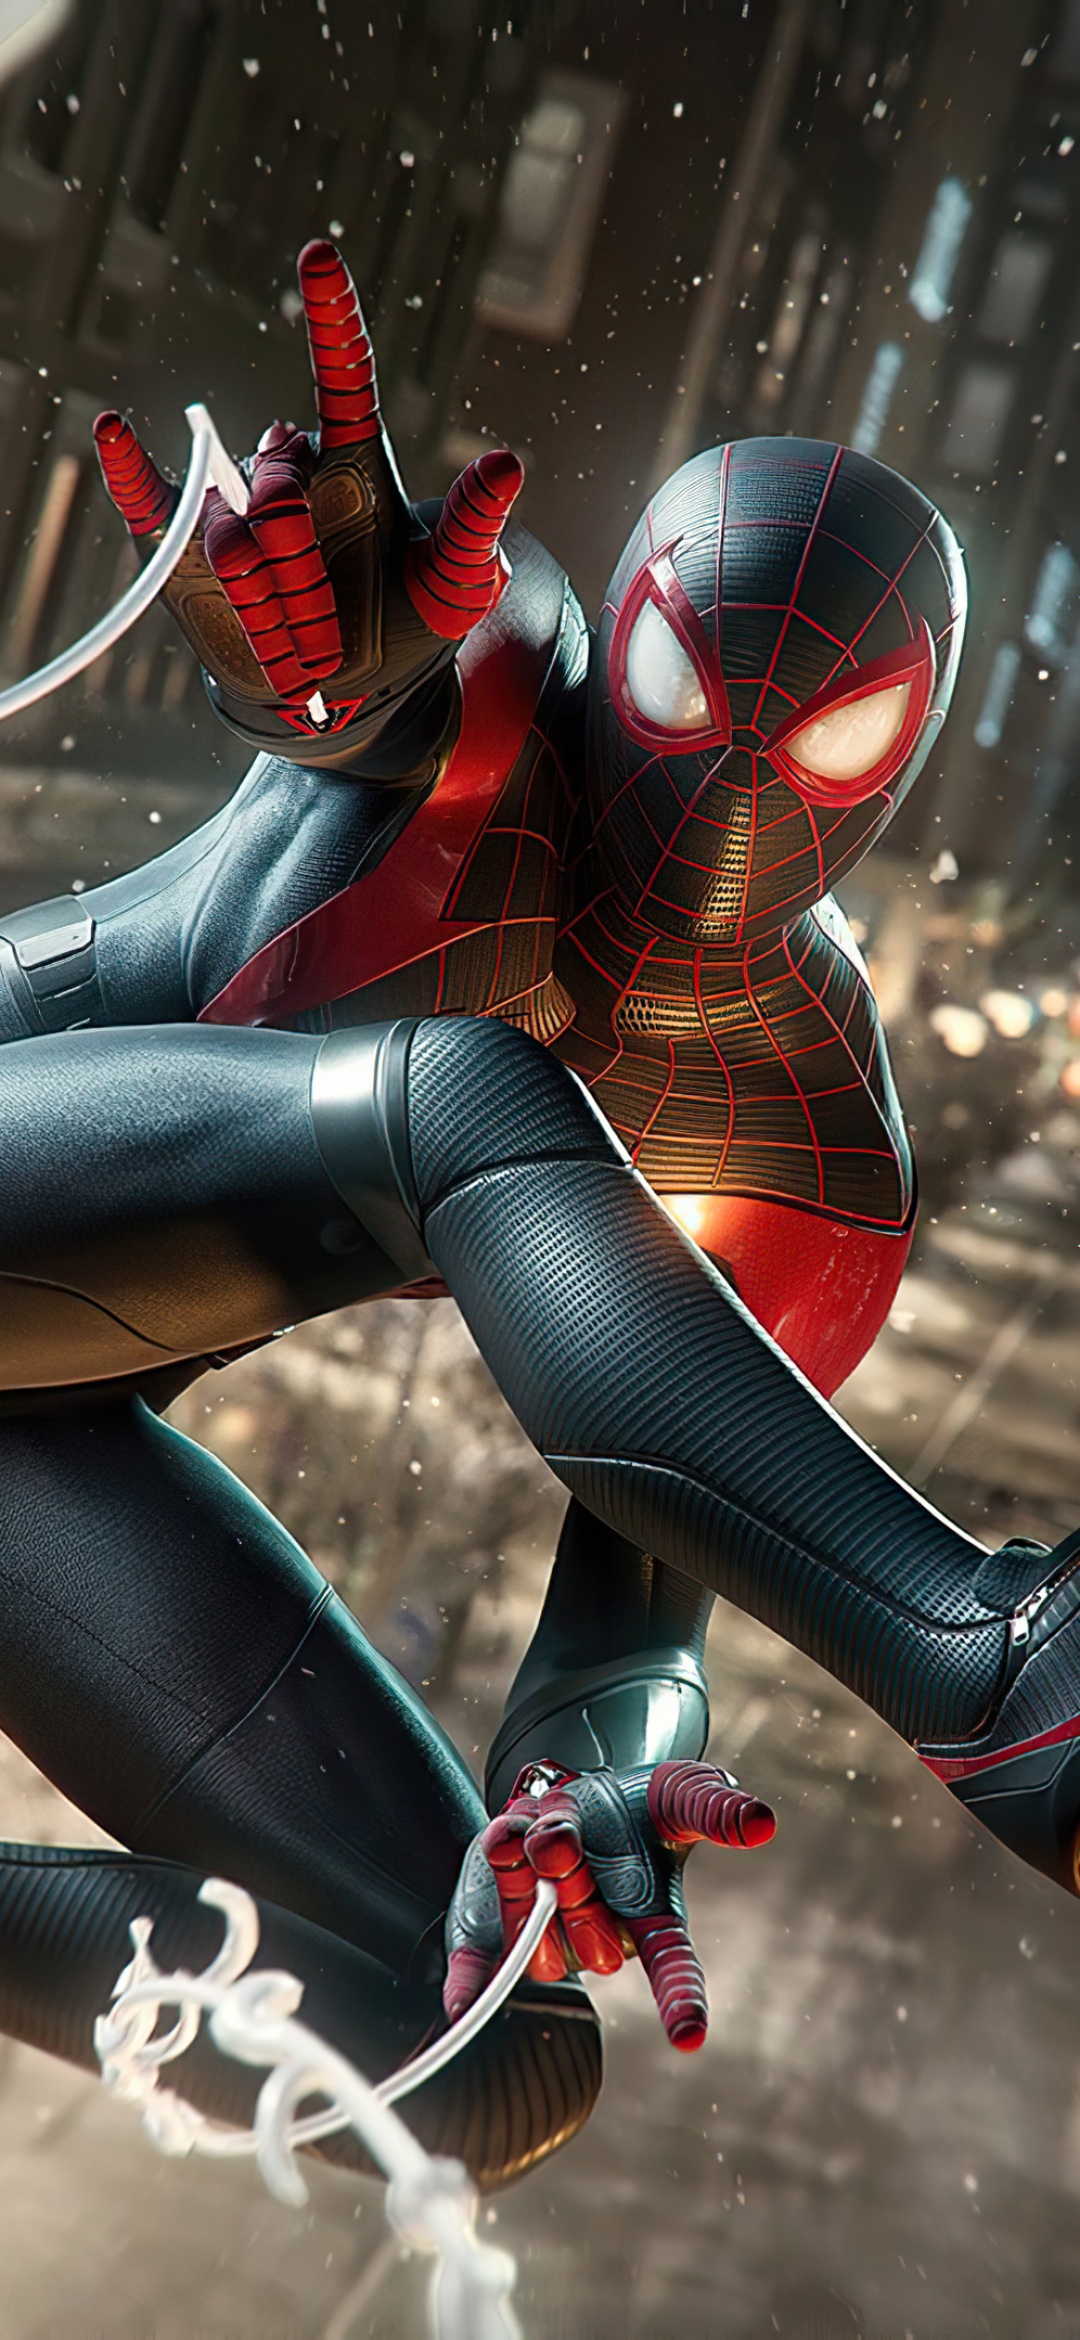 Marvel's Spider-Man: Miles Morales Wallpaper 4K, PlayStation 5, 2020